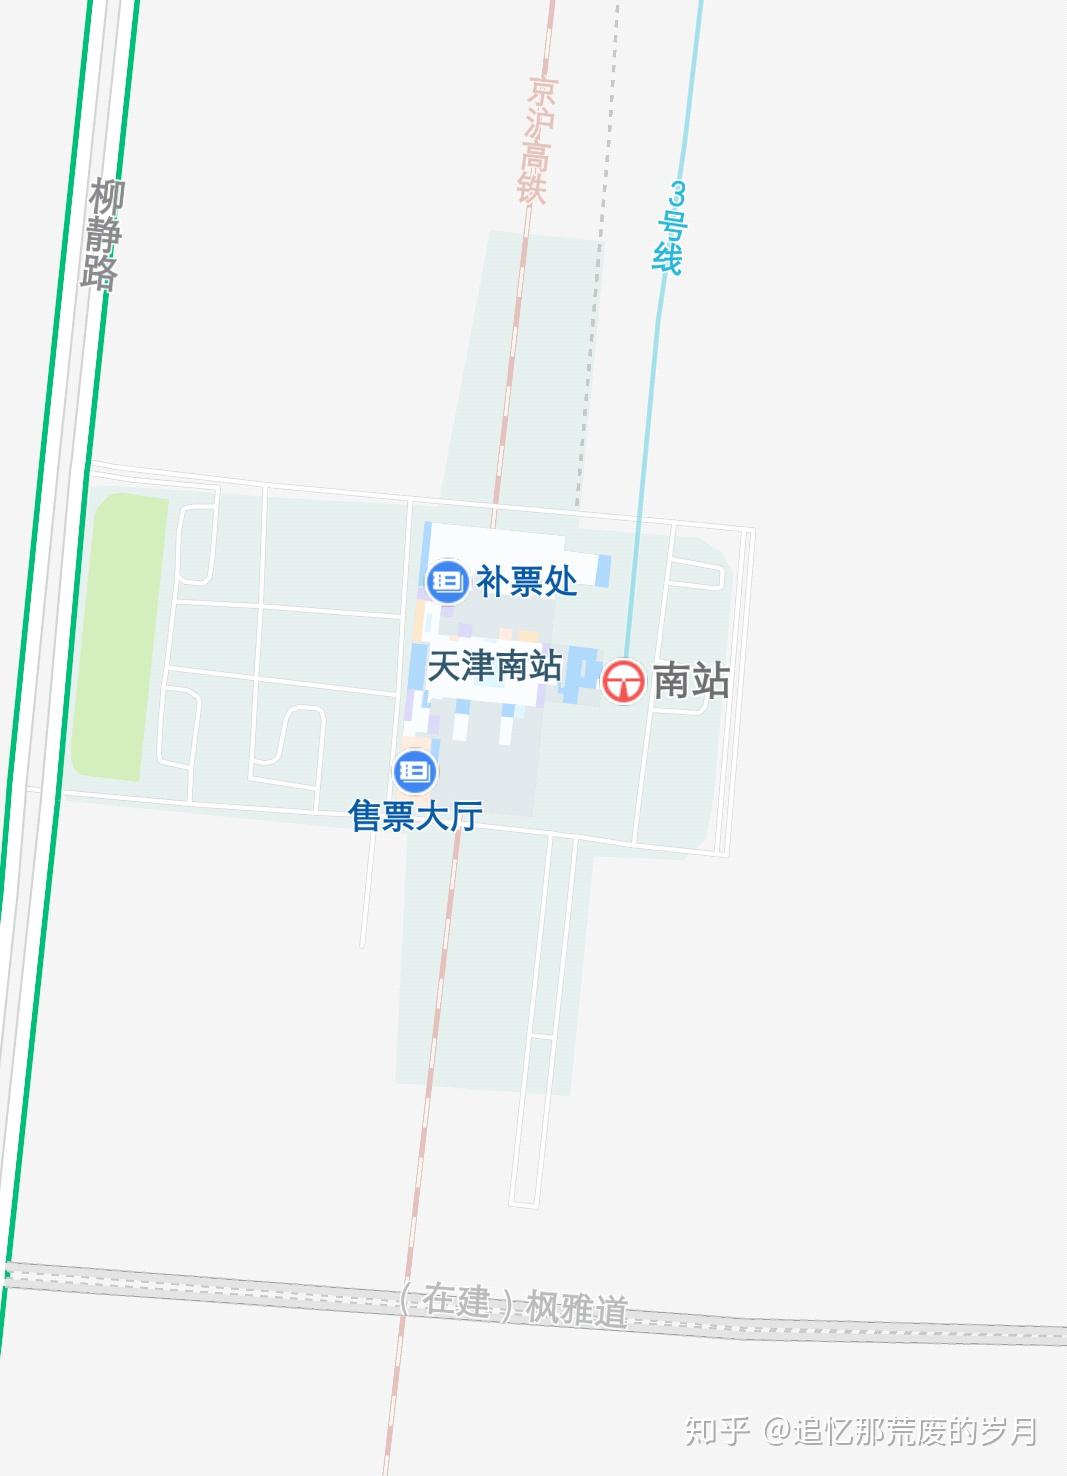 与天津西站,天津站相比,天津南站只是京沪高铁上的一座小规模中间站